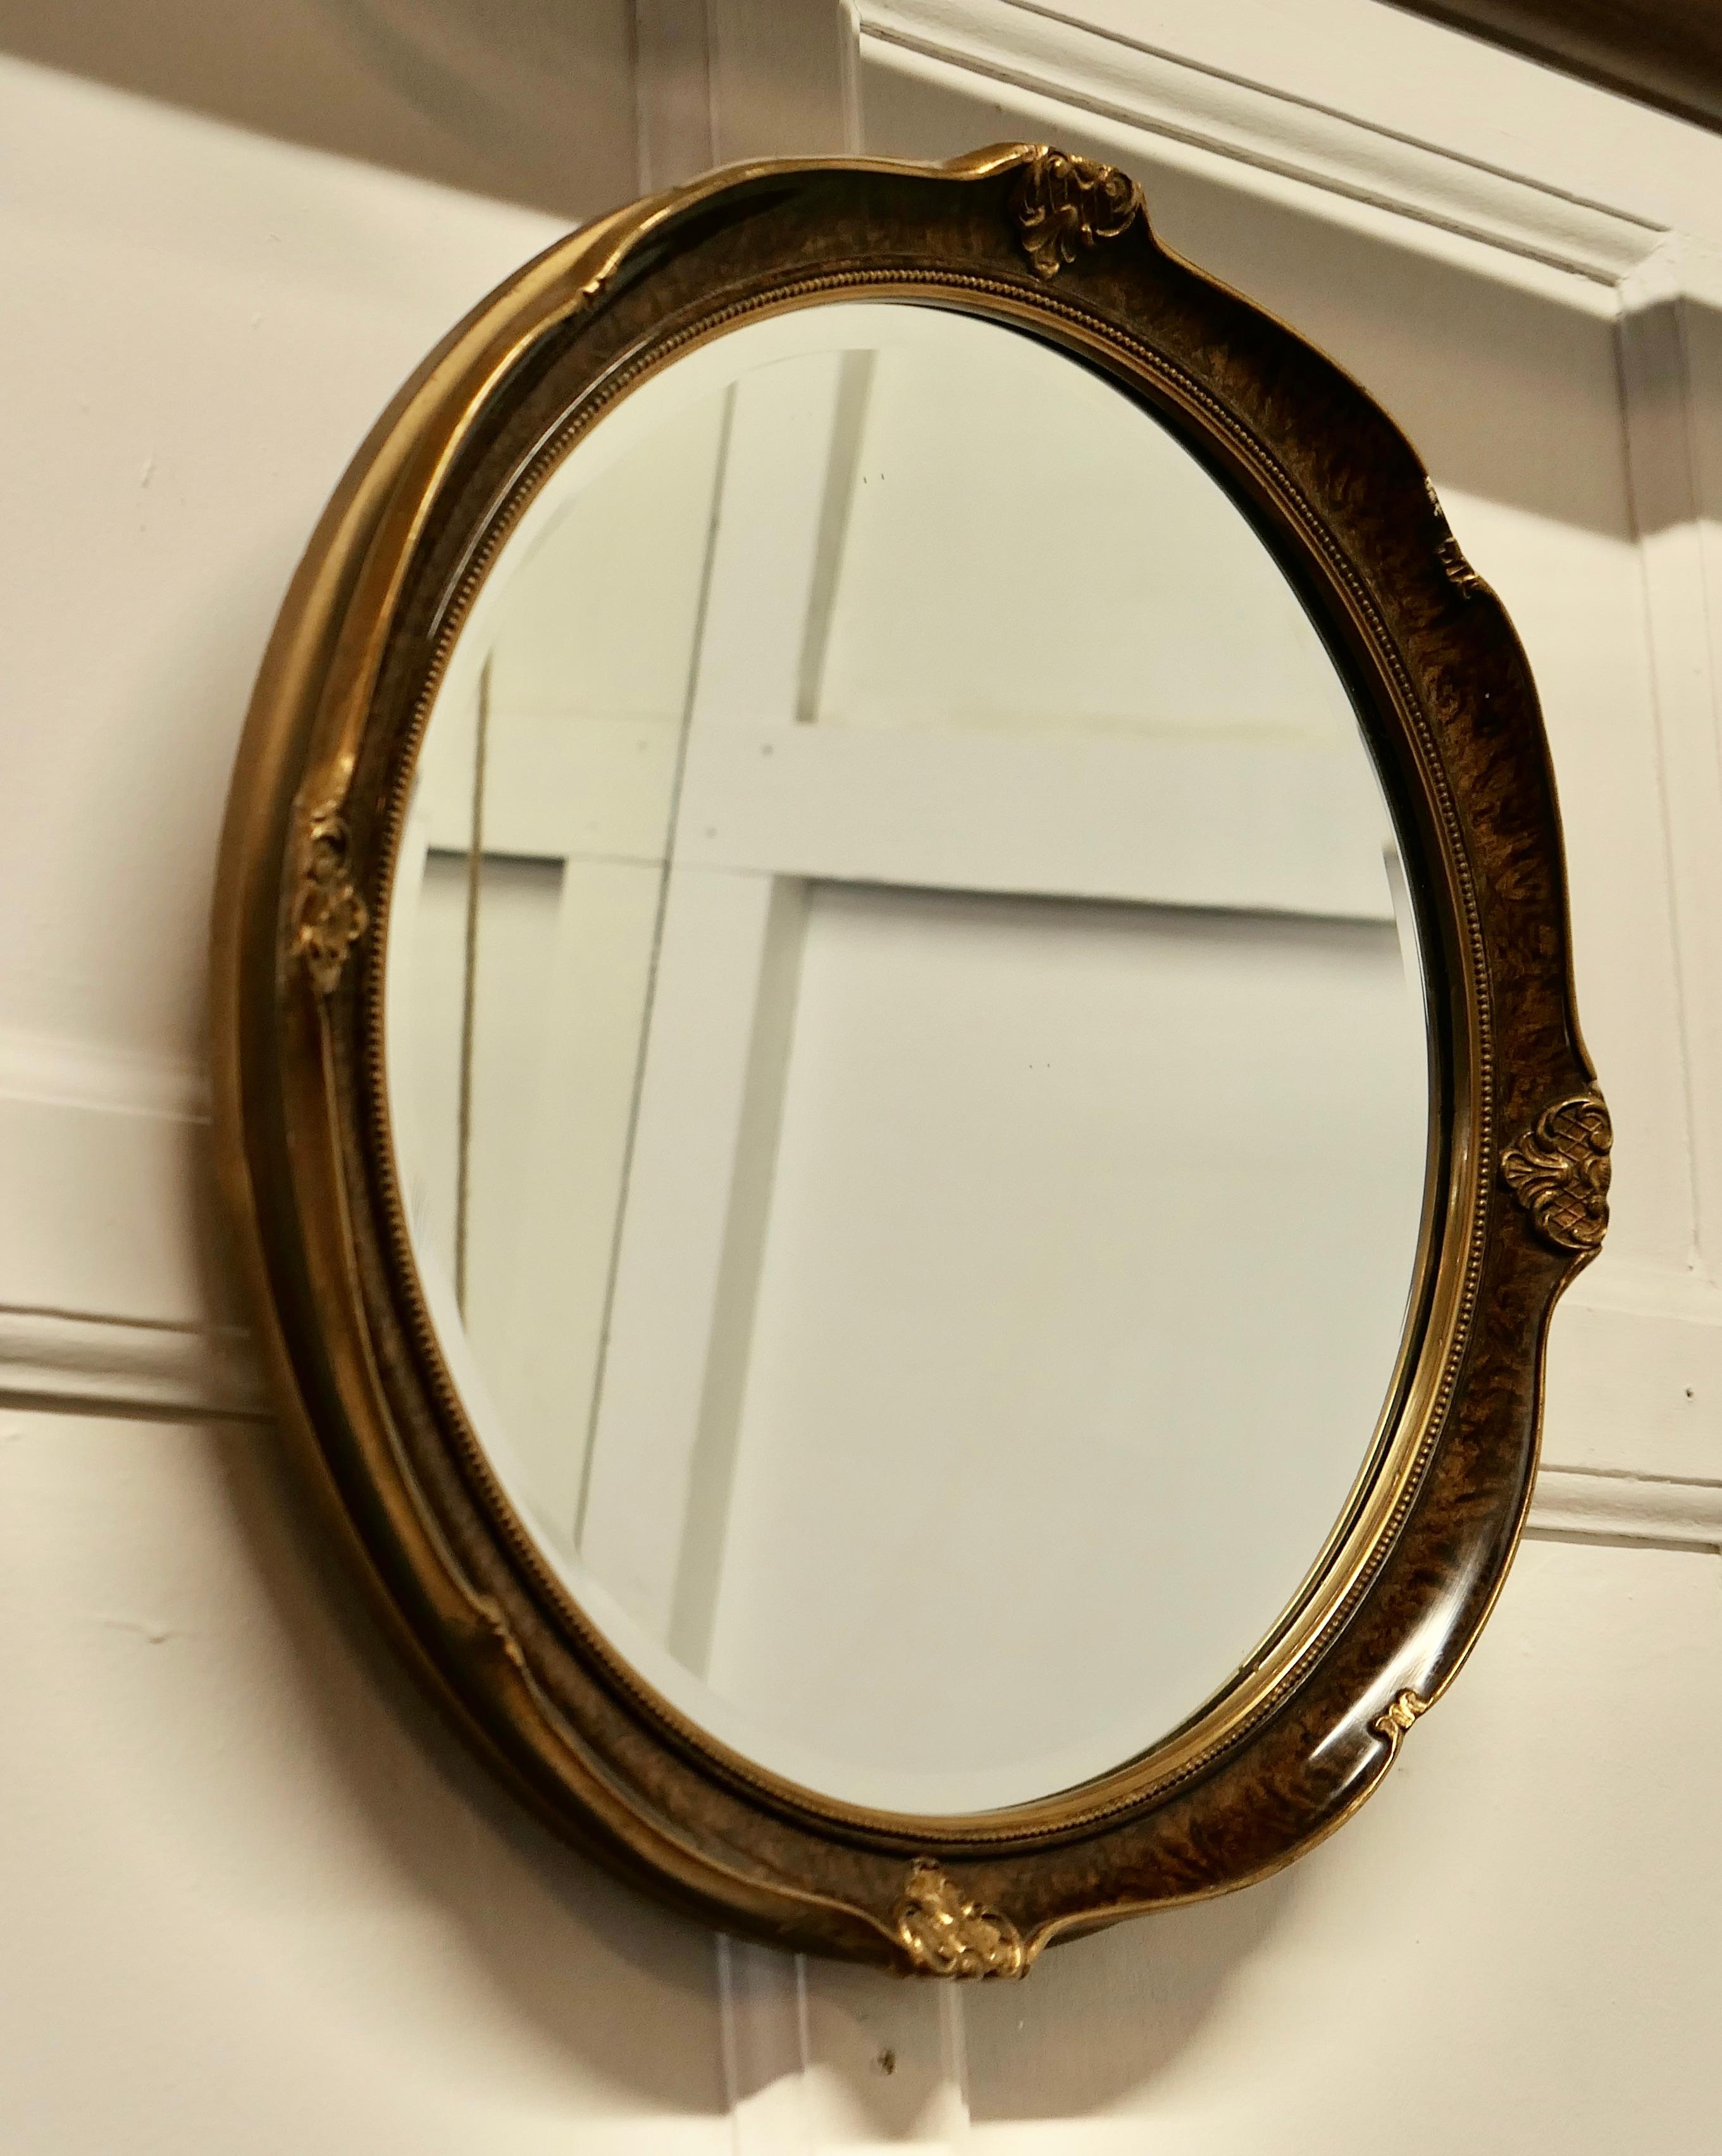 Ovaler Spiegel in Krümeloptik

Dieser Spiegel hat einen 2